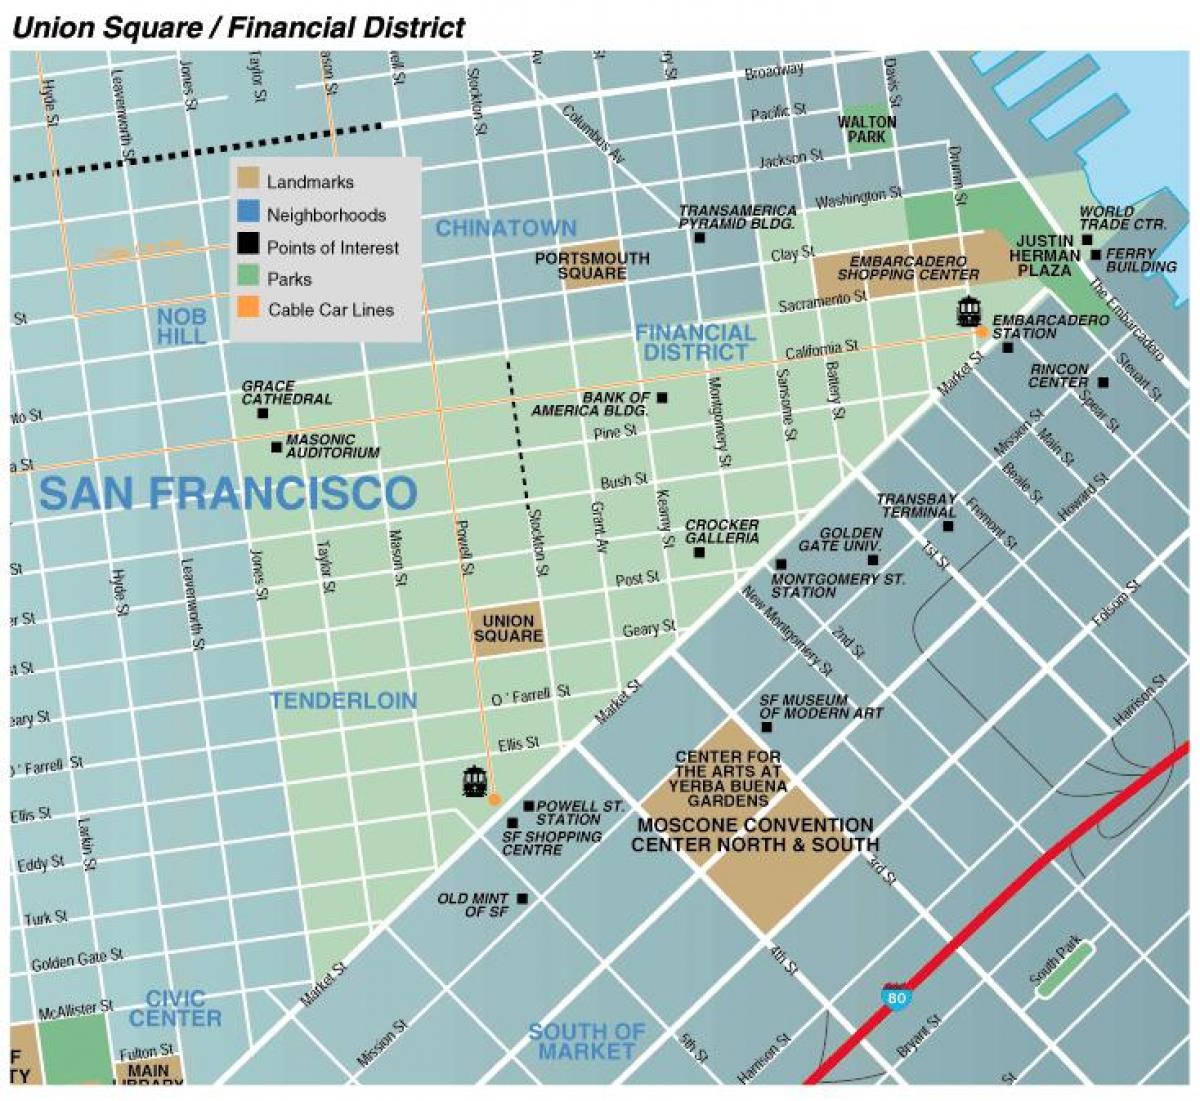 Mapa ng union square area ng San Francisco